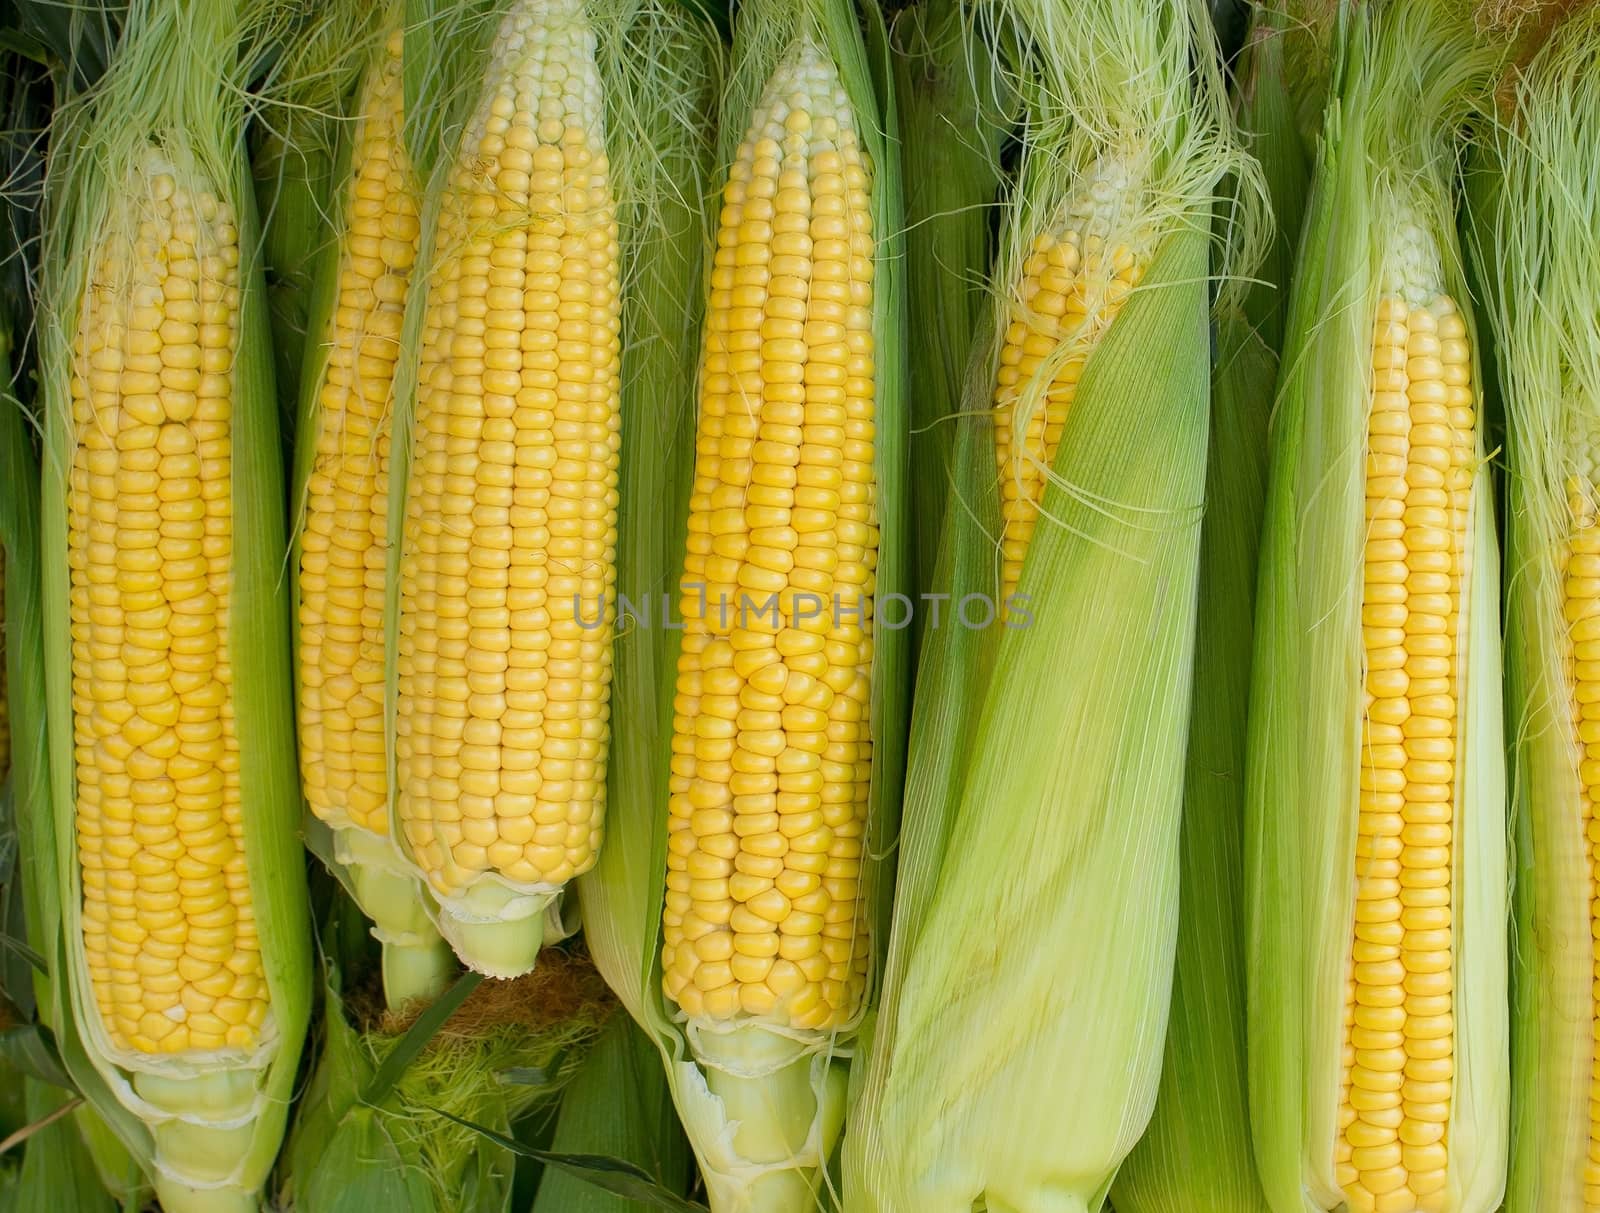 Corn background by Venakr